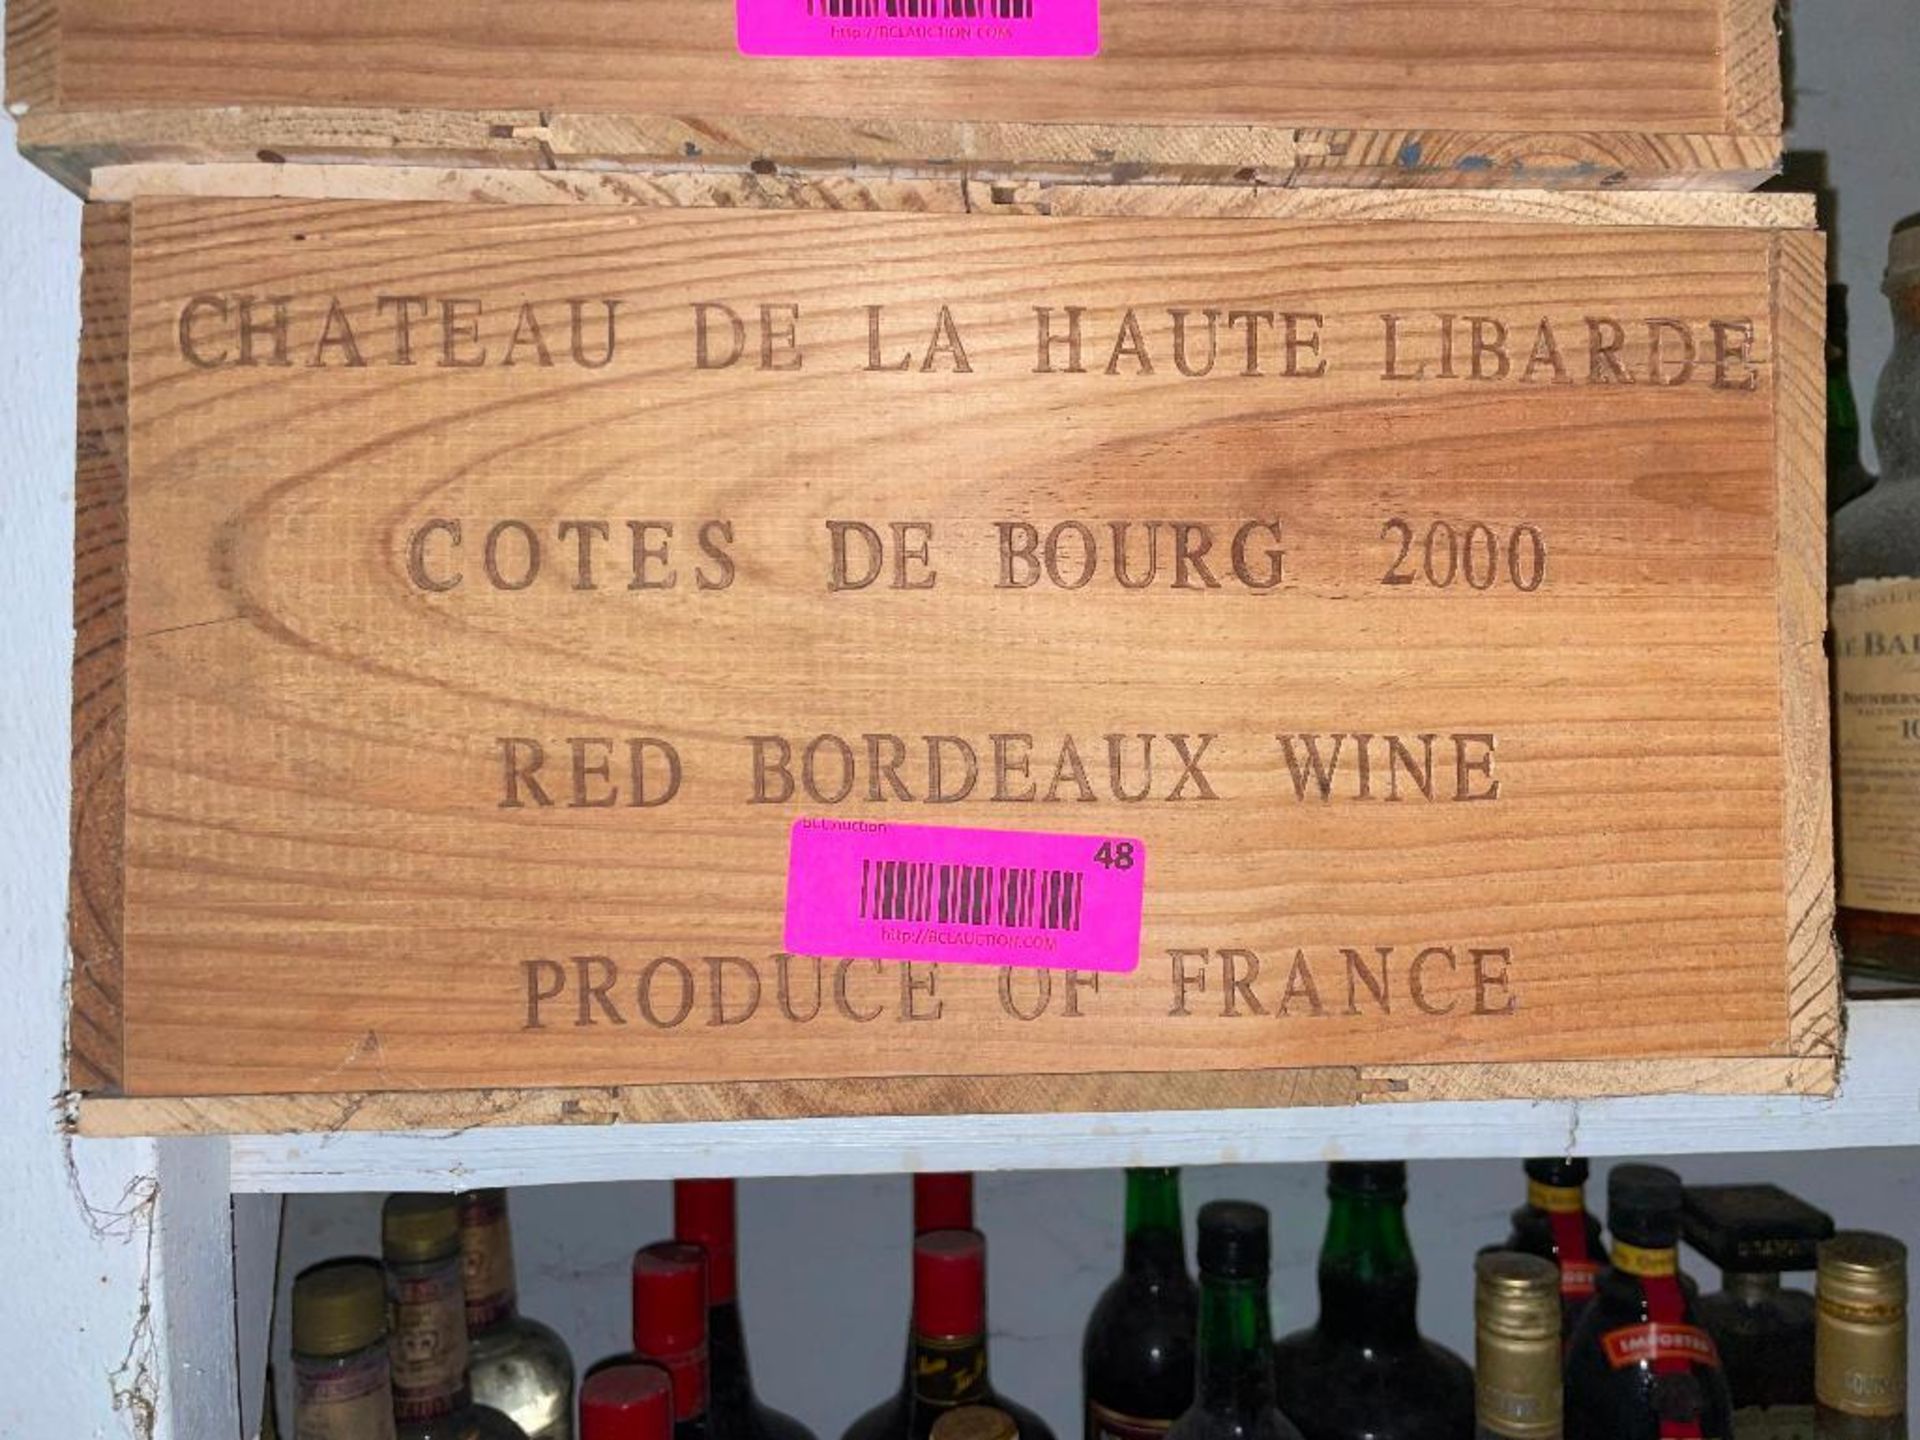 DESCRIPTION: (12) 750 ML BOTTLES OF CHATEAU DE LA HAUTE LIBARDE COTE DE BOURG 2000 ADDITIONAL INFORM - Image 2 of 2